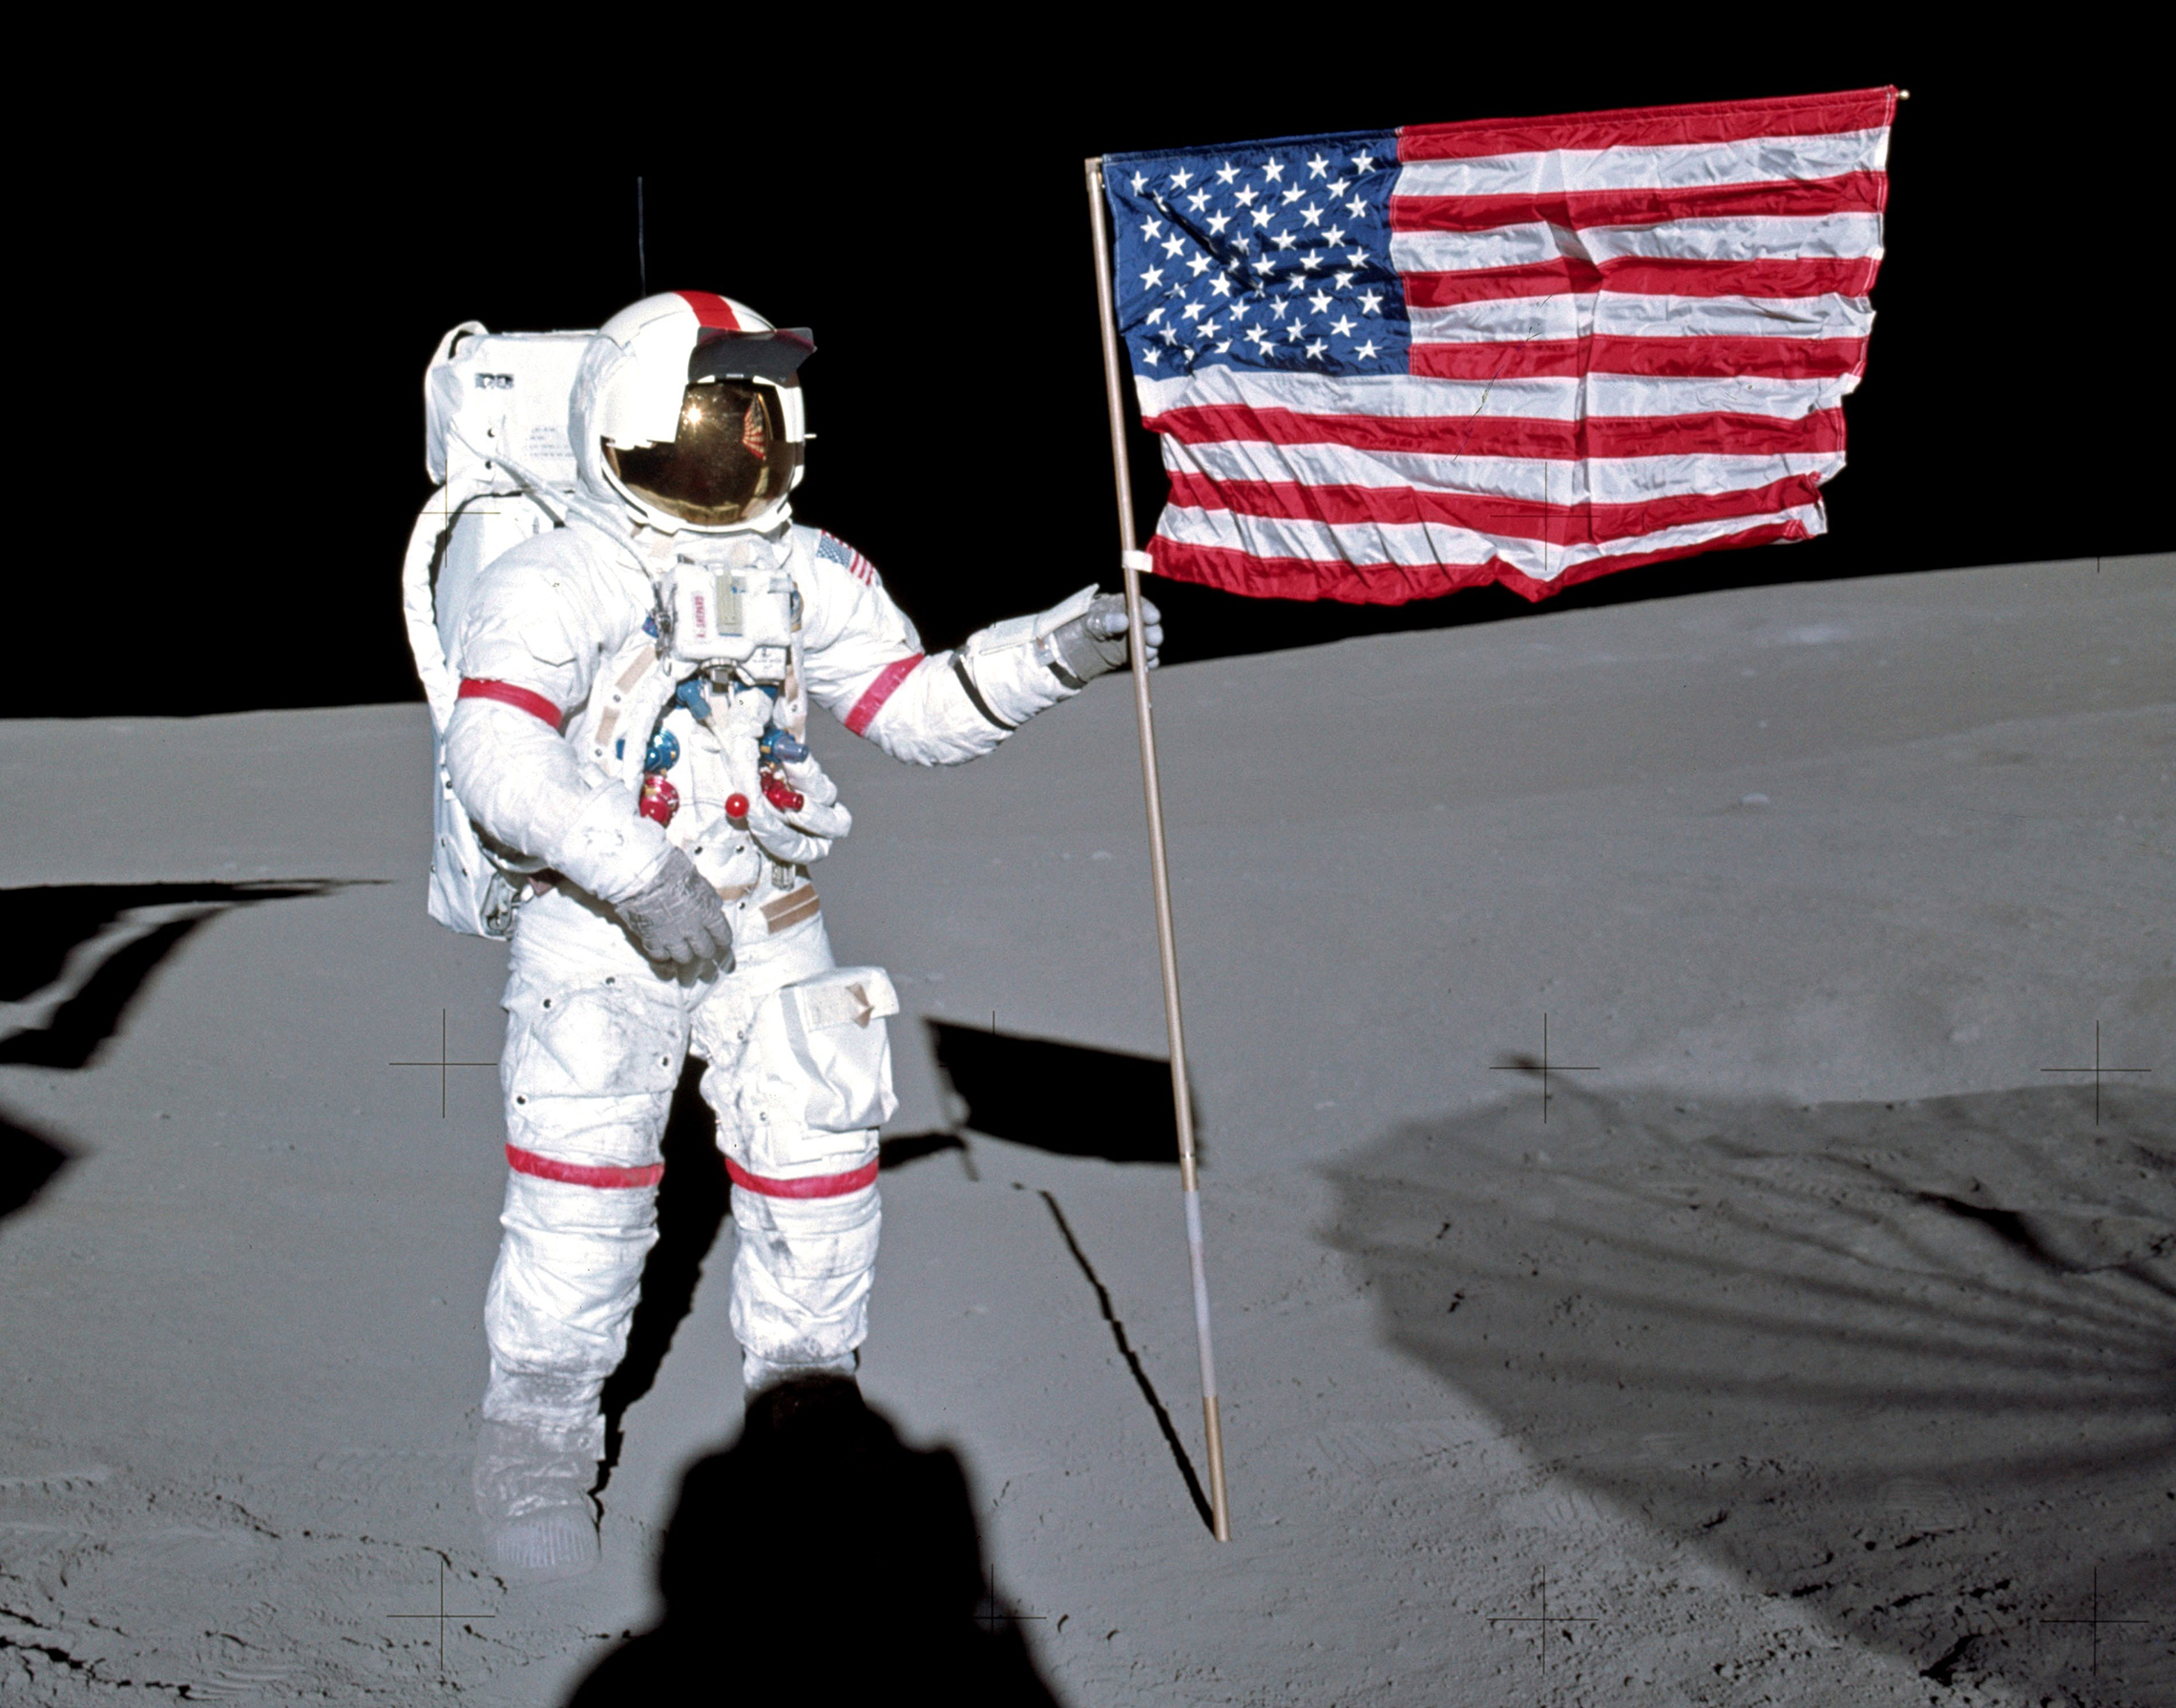 Alan Shepard planter Det Amerikanske flagget på månen.5. februar 1971: Astronaut Alan B. Shepard Jr., kommandør For Apollo 14 lunar landing mission, står ved DET AMERIKANSKE flagget på månens overflate under de første øyeblikkene av den første ekstravehikulære aktiviteten til oppdraget. Mens Shepard og astronaut Edgar D. Mitchell, lunar module-pilot, var å utforske Månen, astronaut Stuart A. Roosa, command module pilot, ble manøvrering Command Service Module i lunar bane. (NASA Photo)